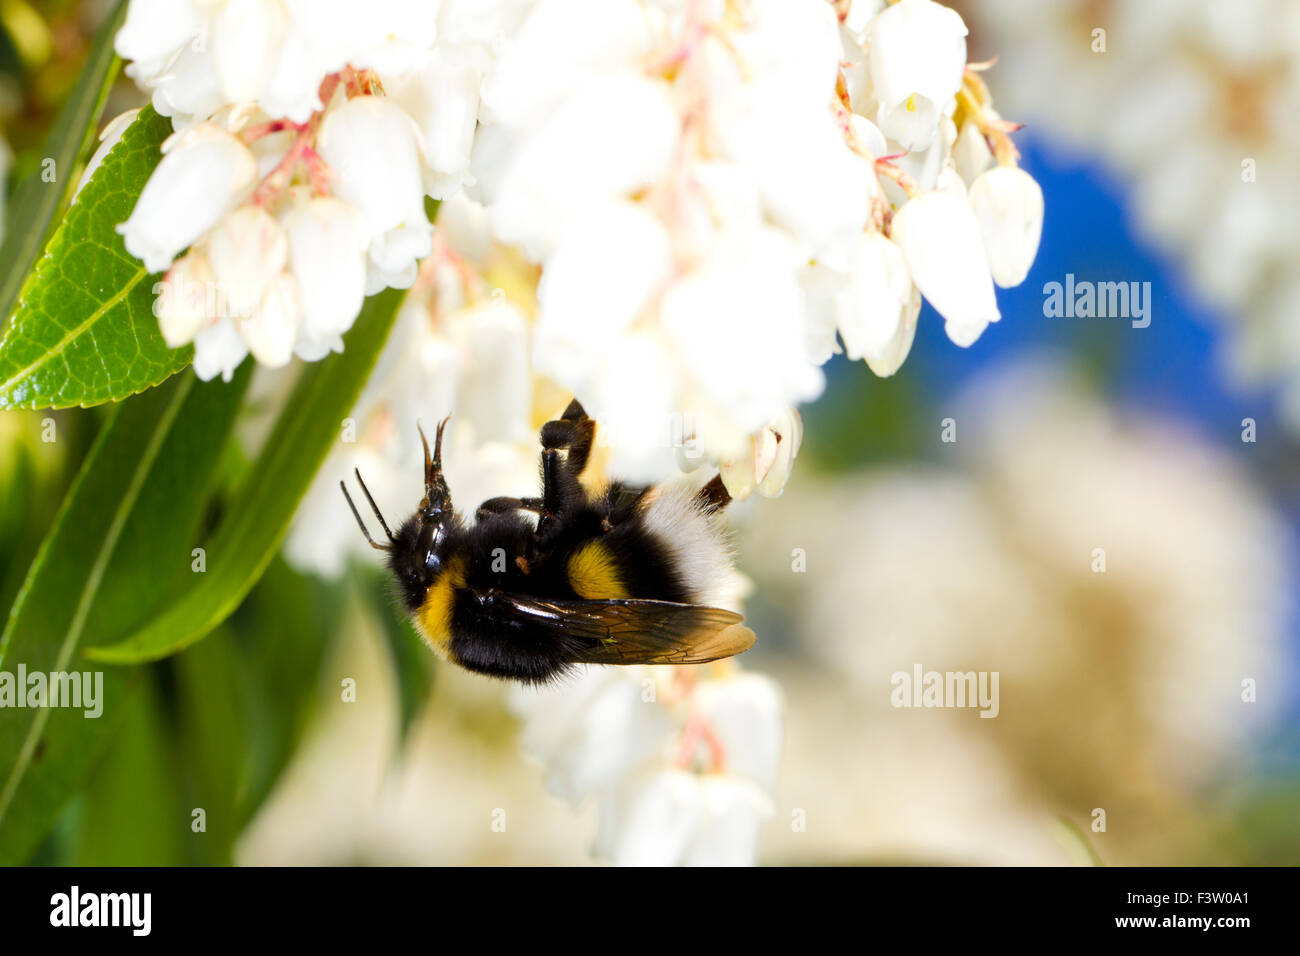 Le cerf de la reine bourdon (Bombus lucorum) se nourrissant de fleurs de Pieris japonica dans un jardin. Powy, au Pays de Galles. Avril. Banque D'Images